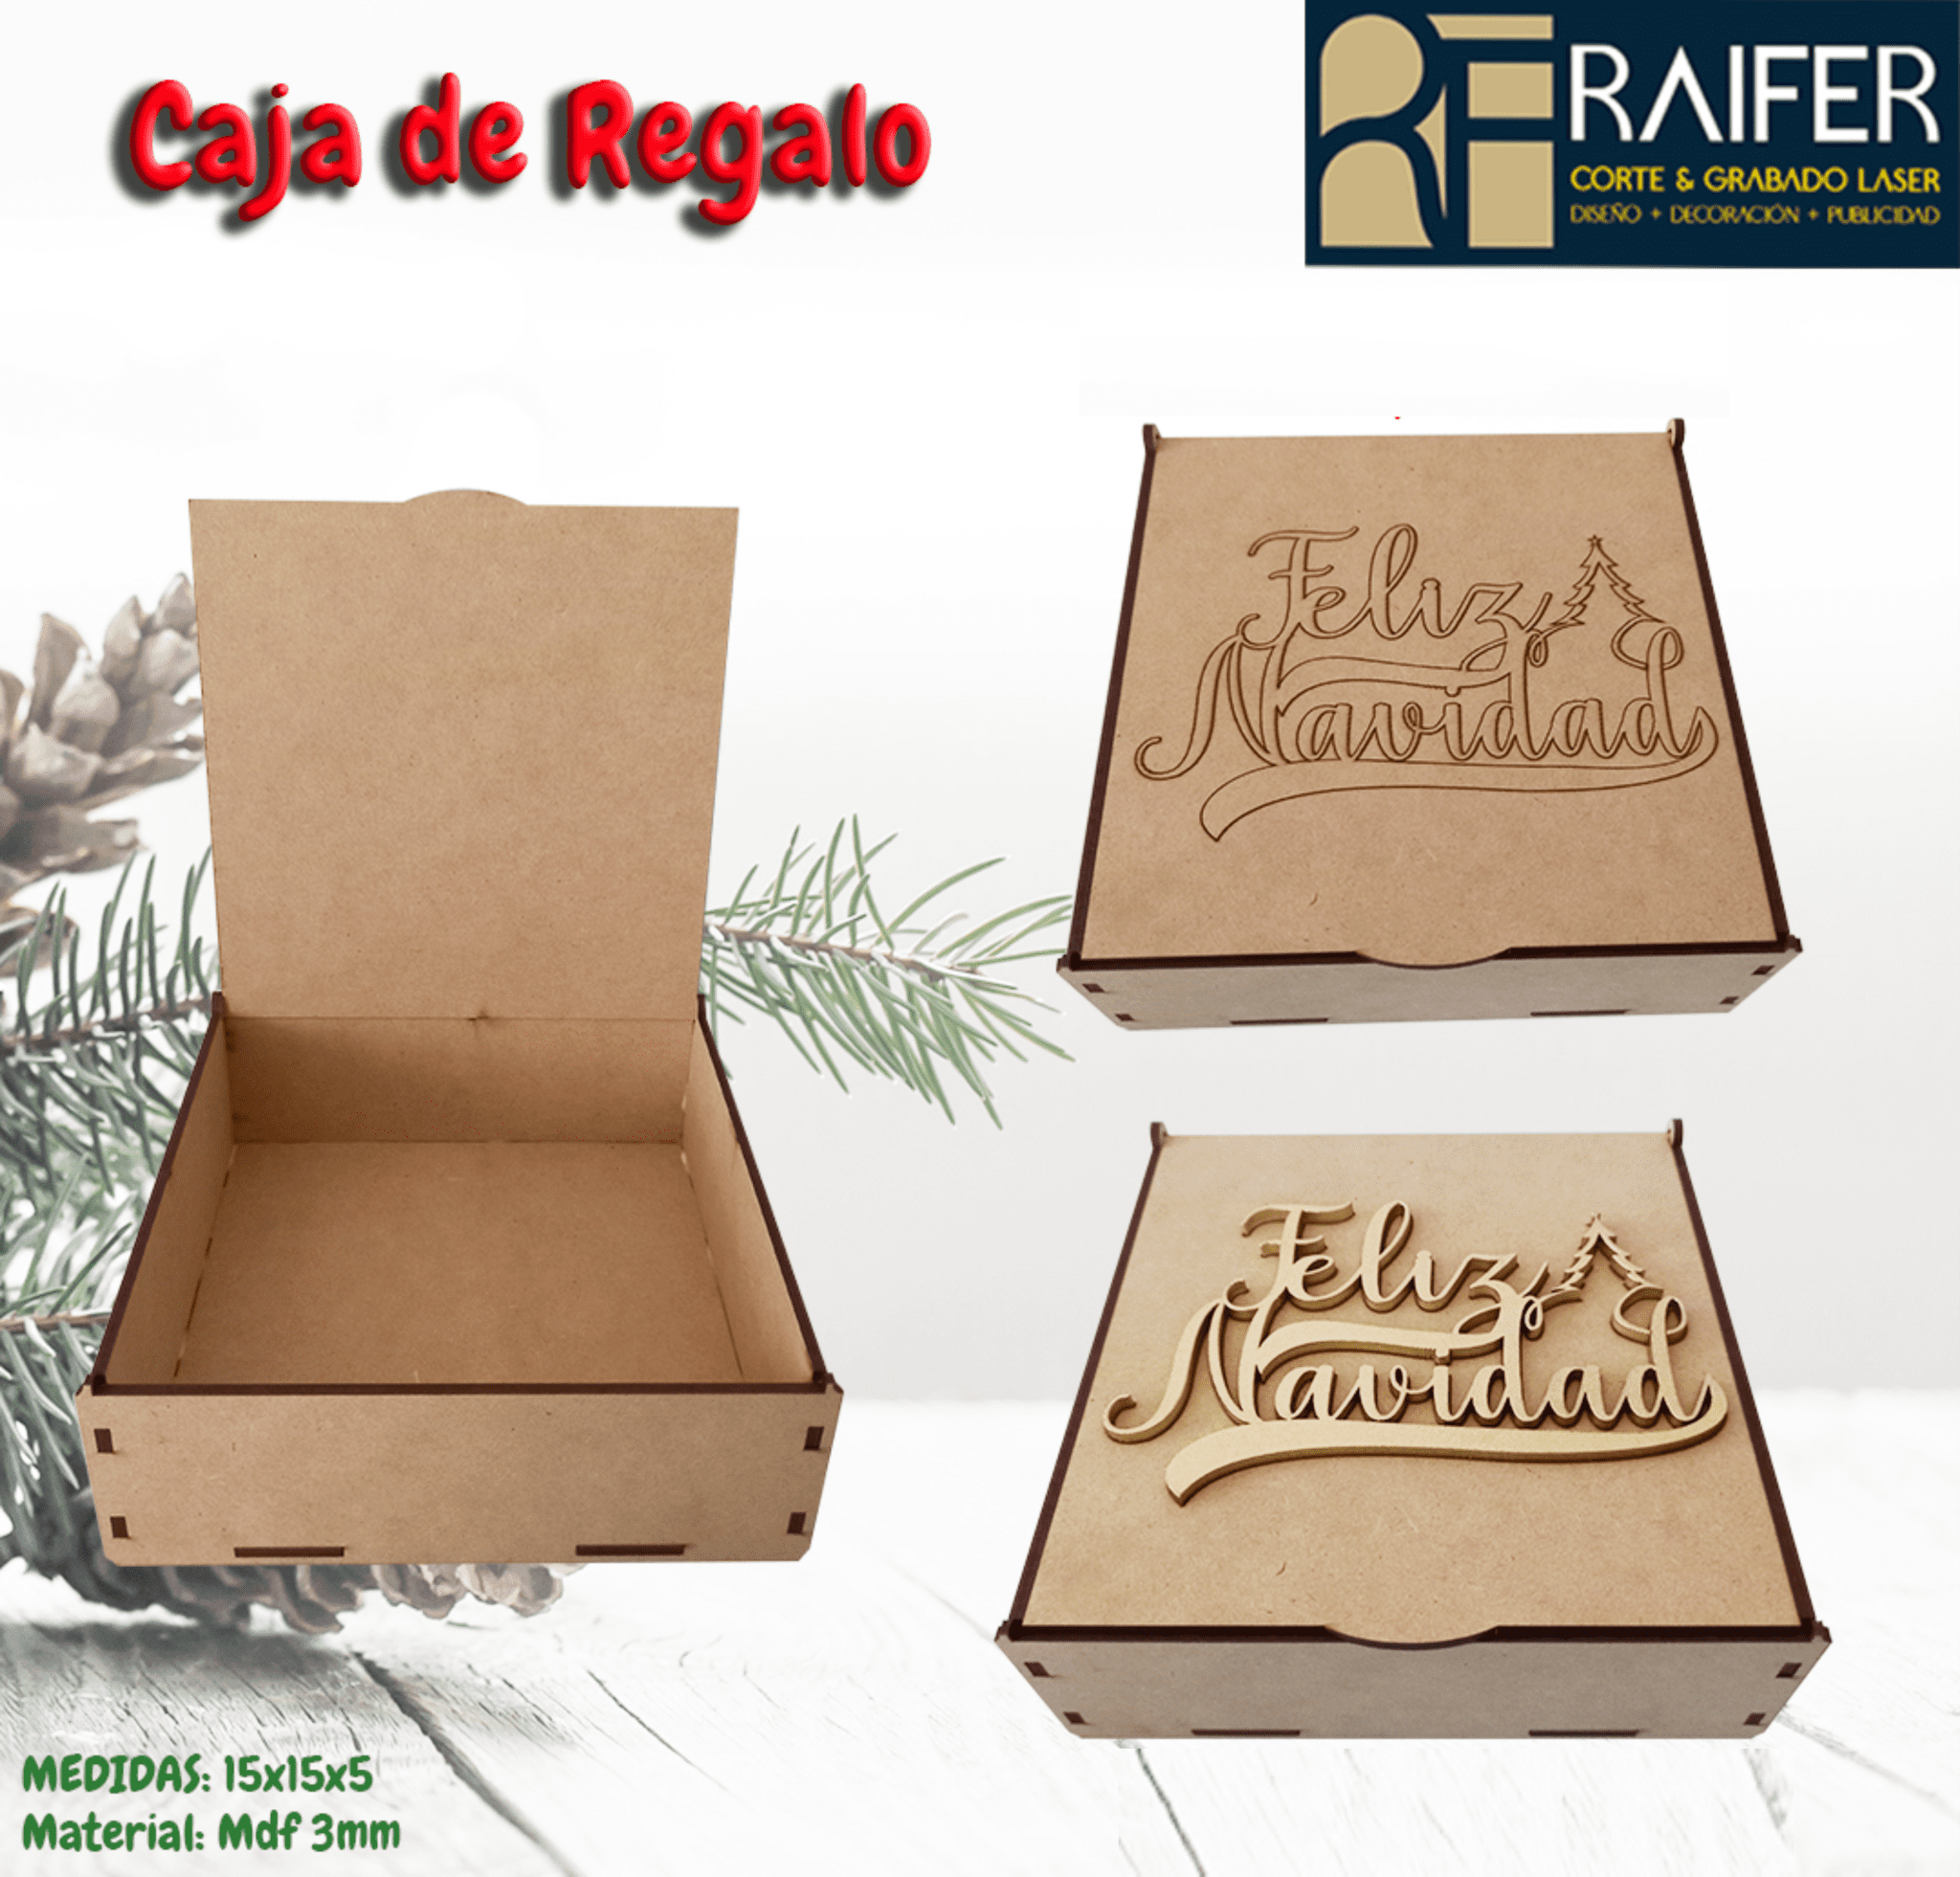 Caja De Regalo Raiferlaser 6781